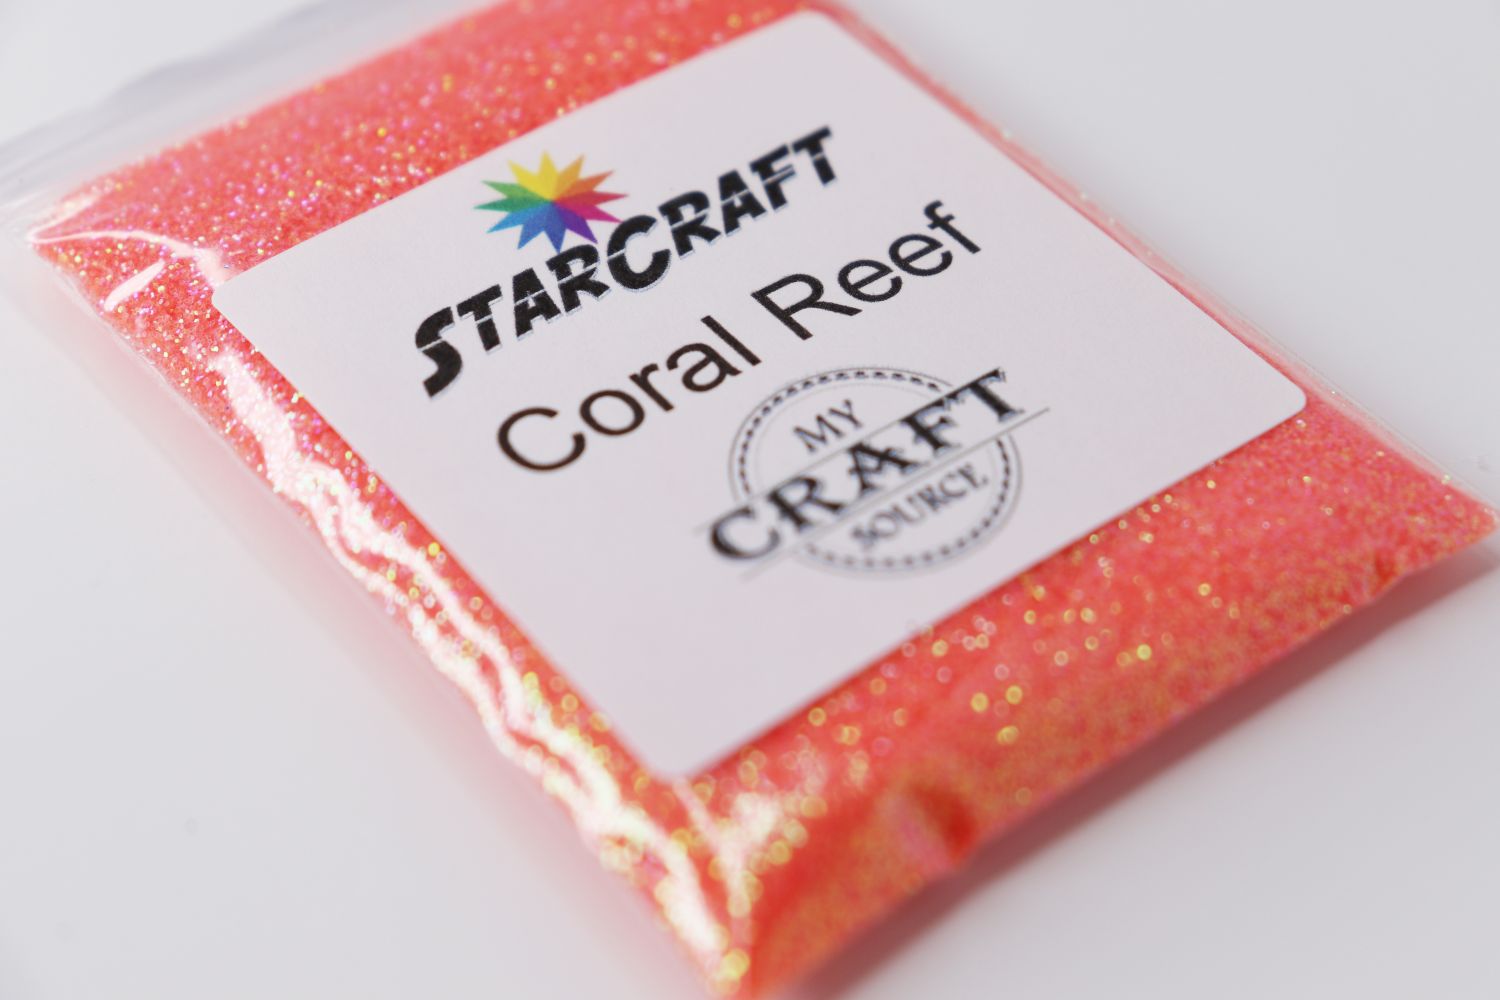 StarCraft Neon Glitter - Coral Reef - 0.5 oz